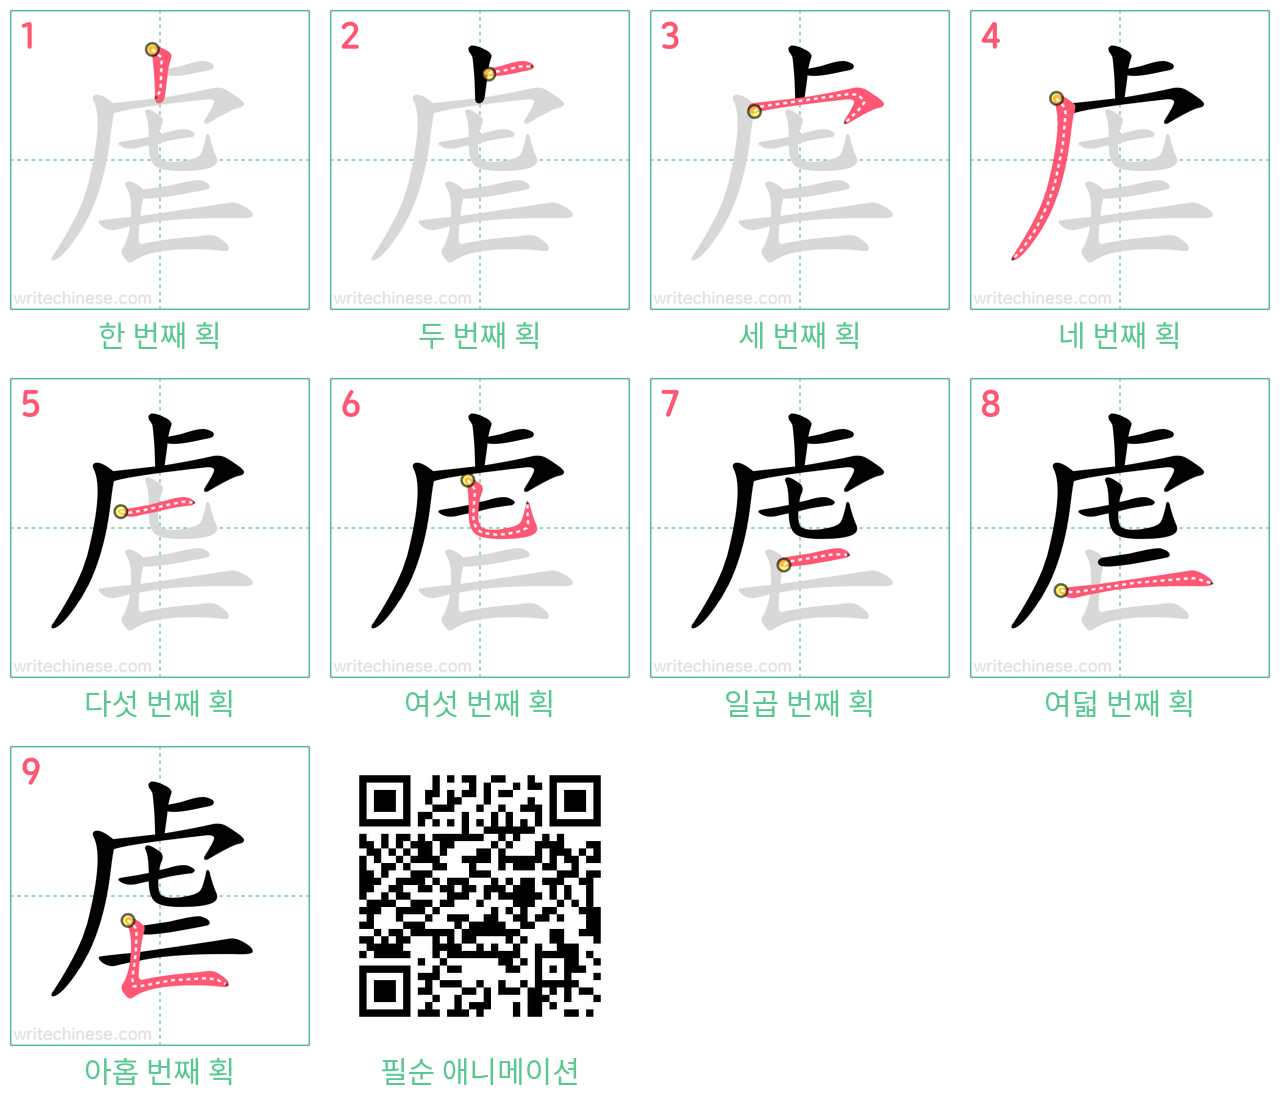 虐 step-by-step stroke order diagrams